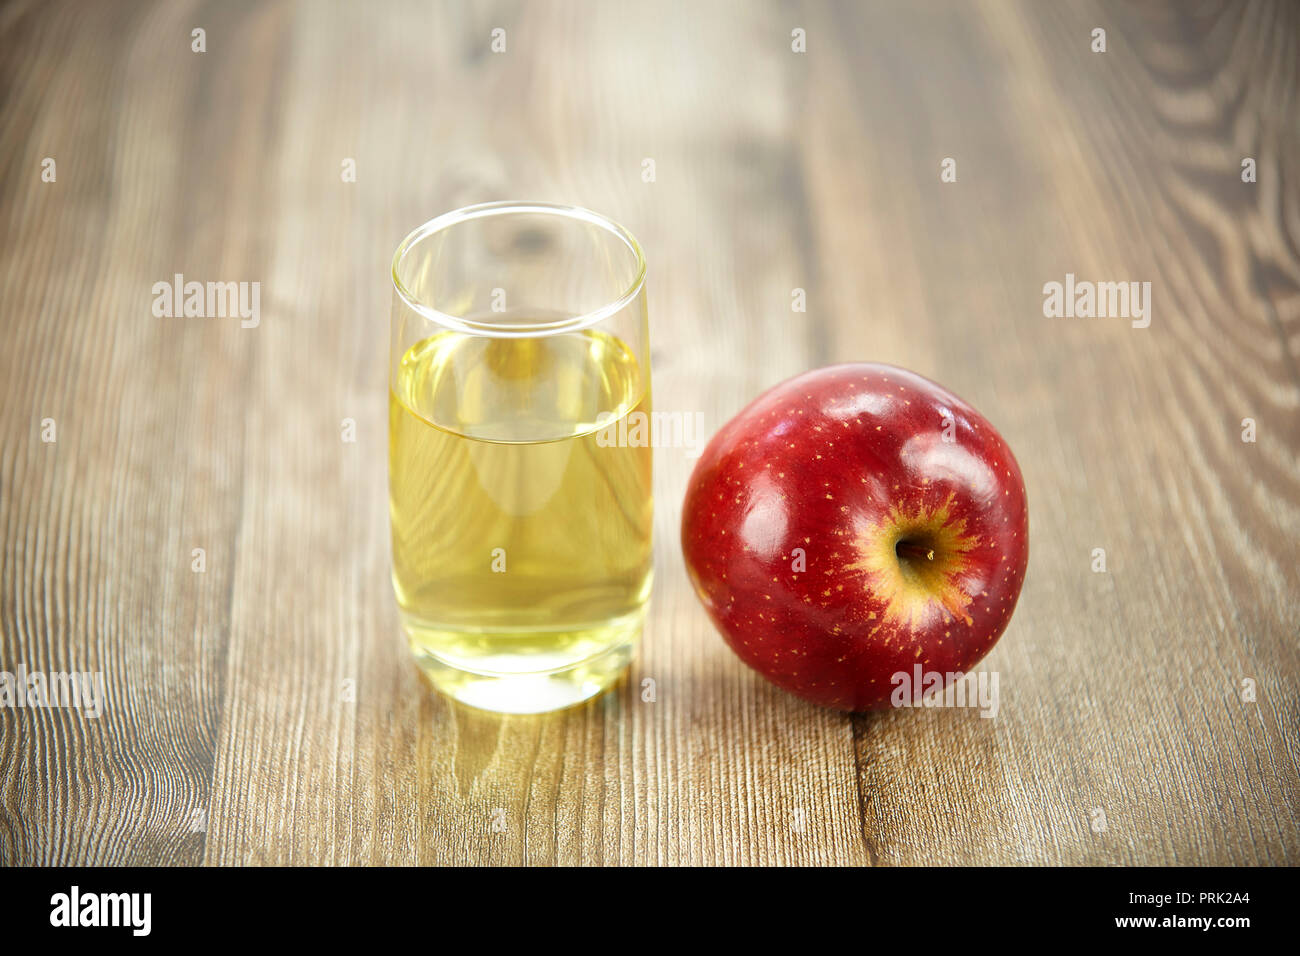 Ein Apfel und ein Glas Apfelsaft auf der Oberfläche des Holzes. Stockfoto